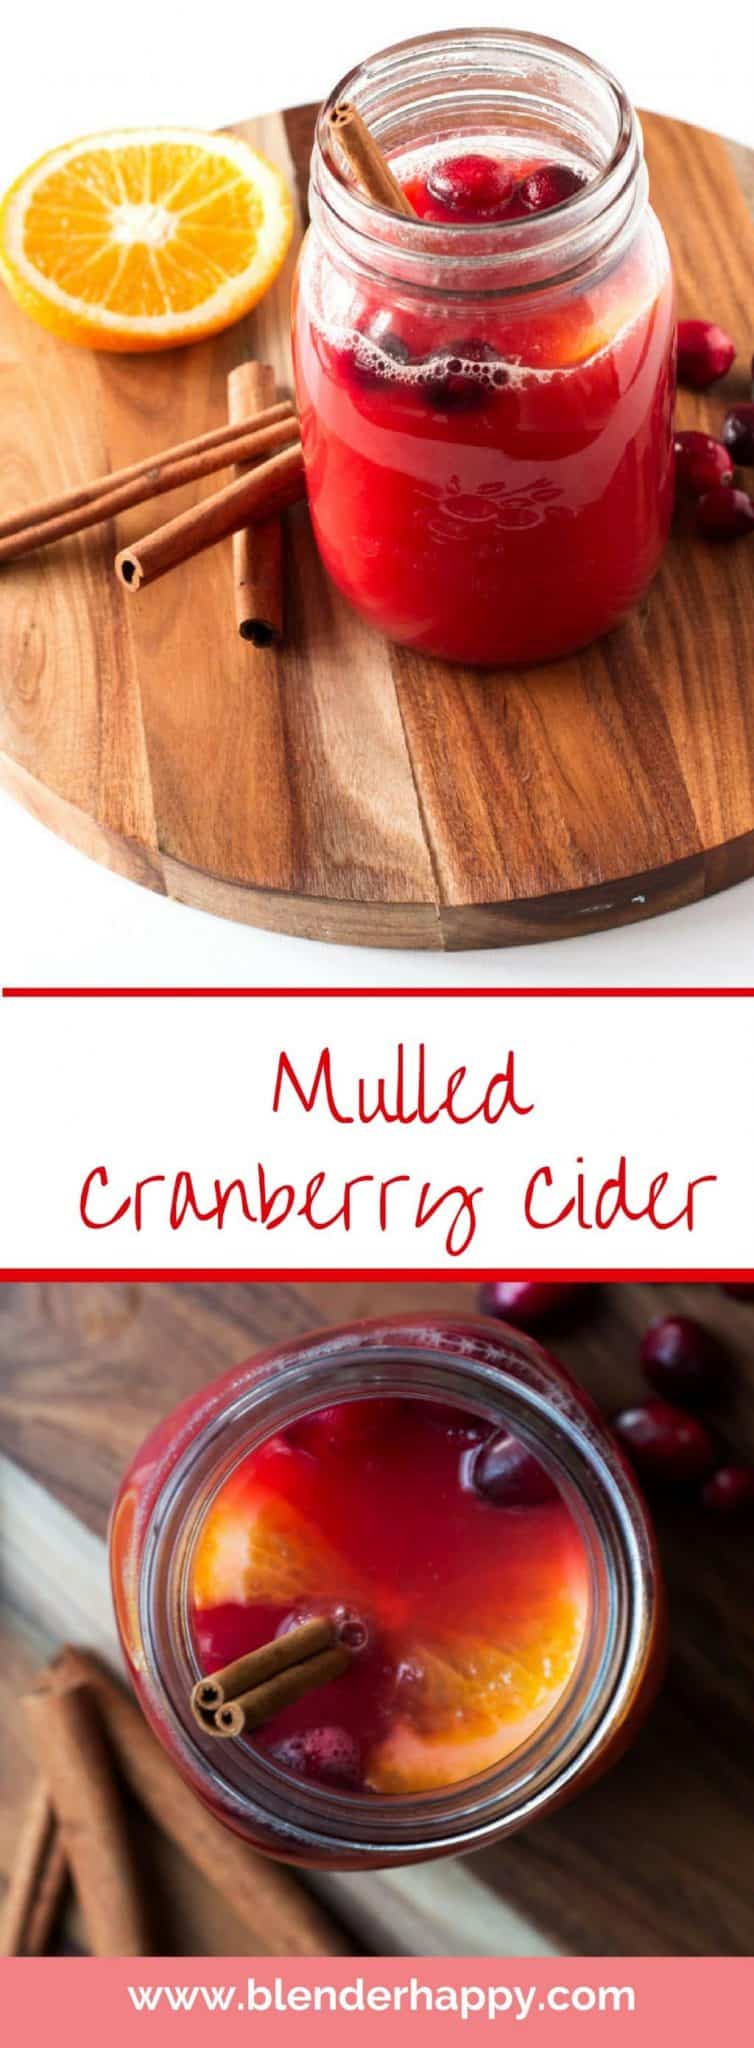 Mulled Cranberry Cider - No sugar added » Blender Happy